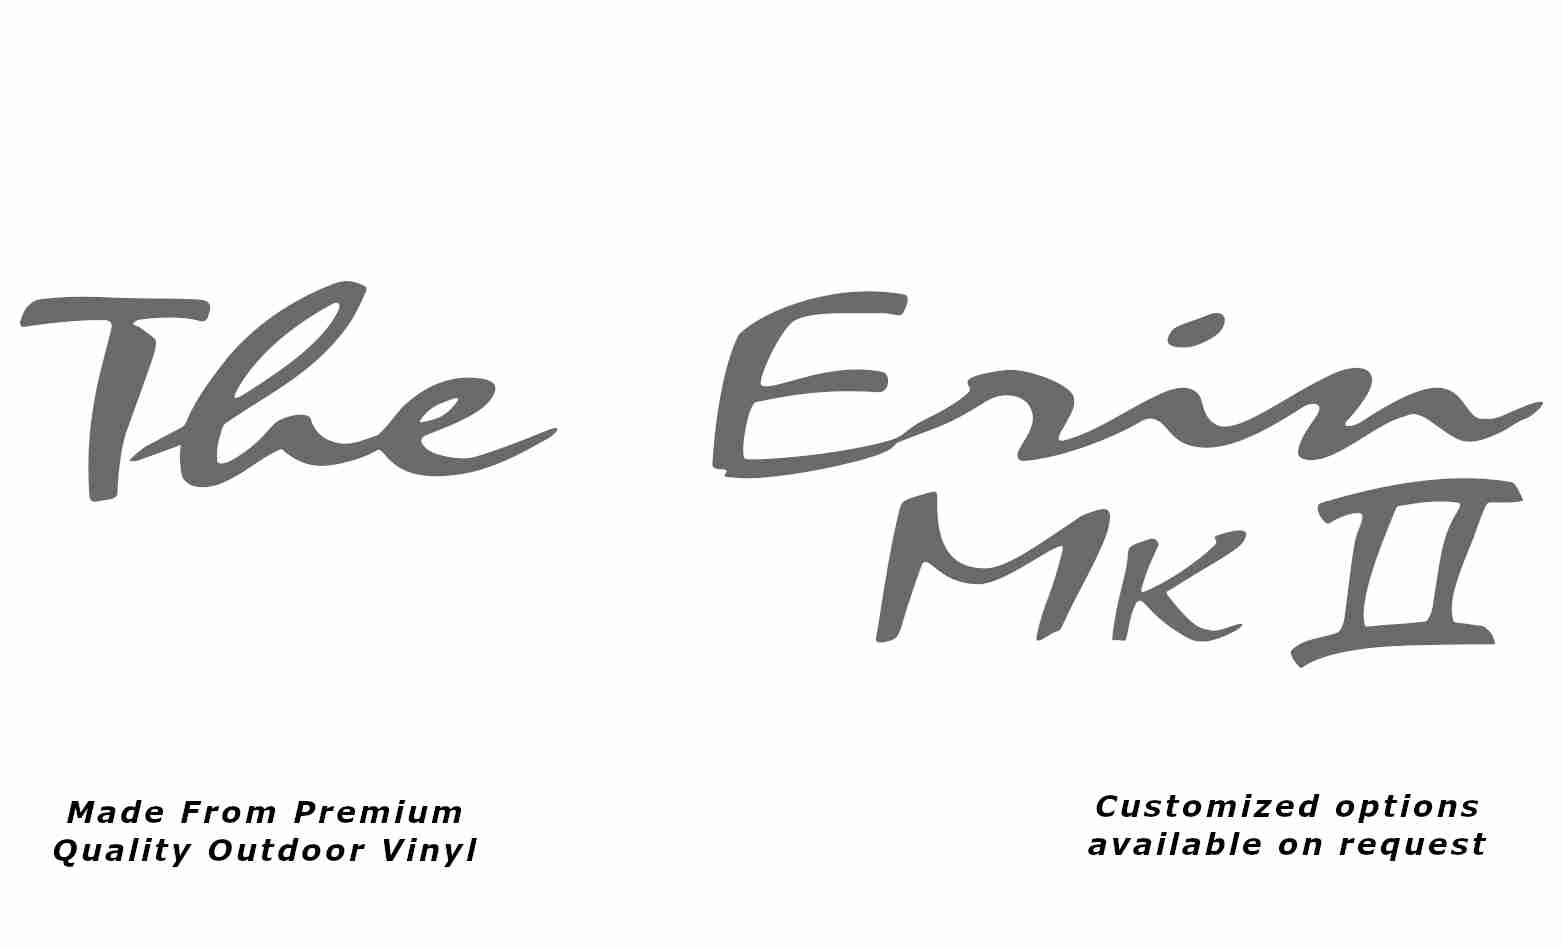 Avan the erin mk ii caravan replacement vinyl decal sticker in silver grey.